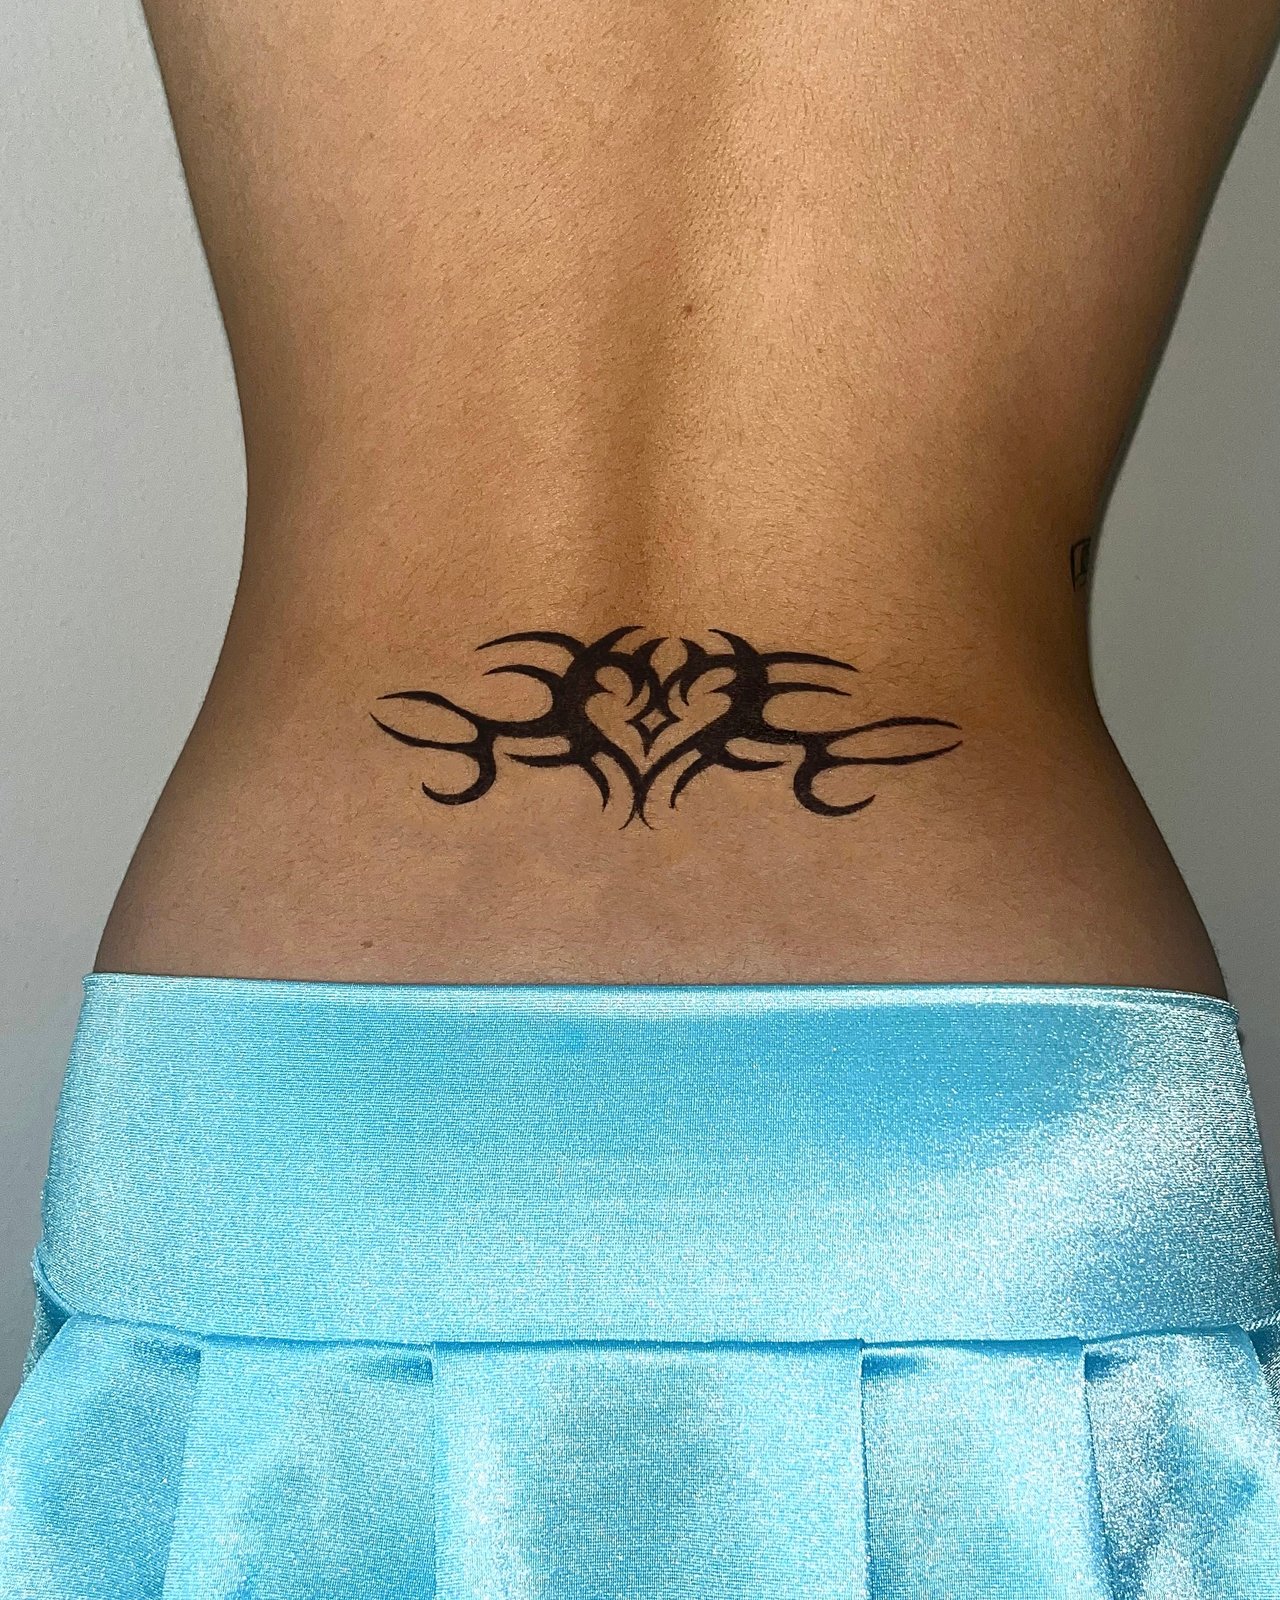 Sisters Heartbeat Temporary Tattoo / Matching Tattoos / Best Friends Tattoo  / Bff Tattoo / Friendship Tattoo - Etsy